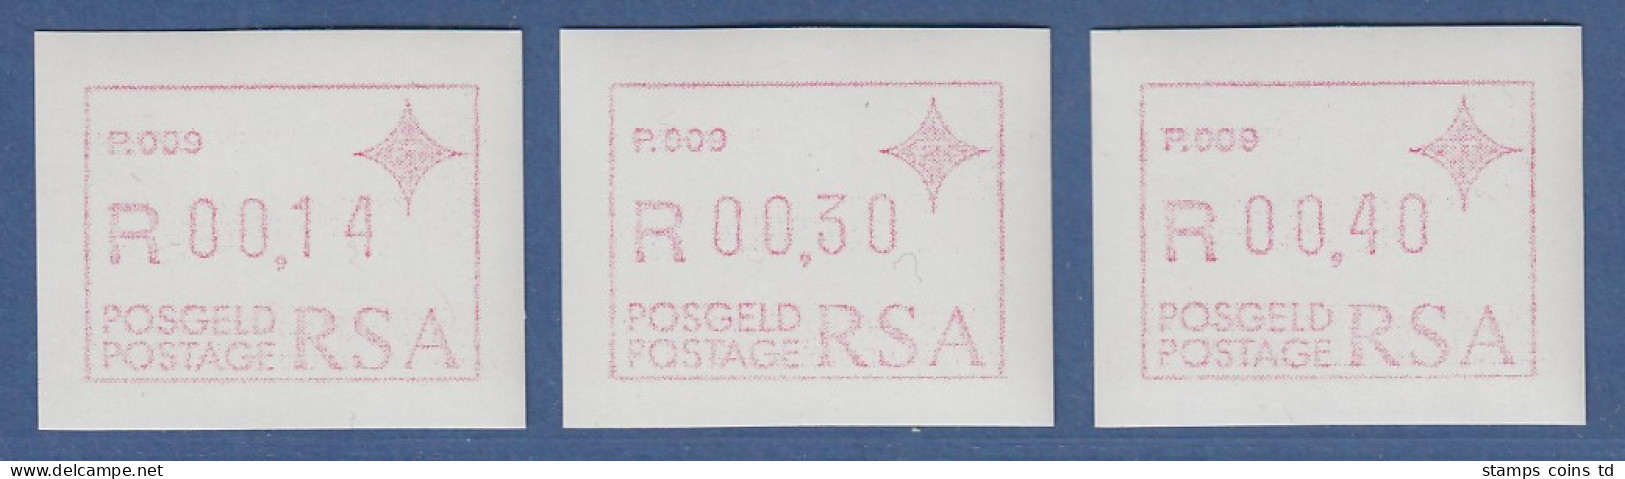 RSA Südafrika FRAMA-ATM  Aut.-Nr. P.009 Satz 14-30-40 ** (VS) - Frankeervignetten (Frama)